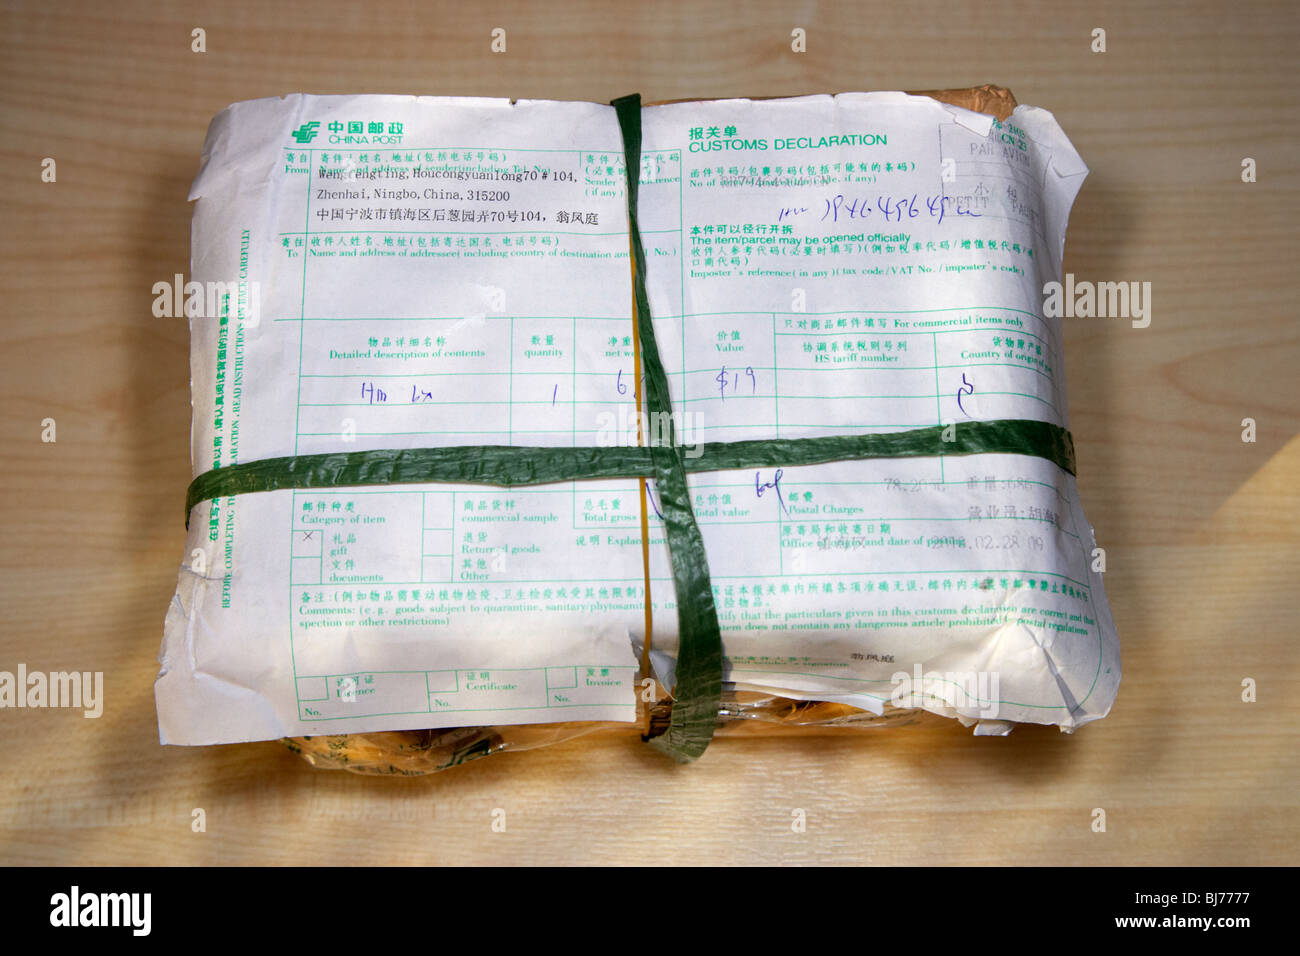 Paket aus China erhielt in Großbritannien mit chinesischen Verpackung und  Zoll-Abfertigung-Formular gesendet Stockfotografie - Alamy